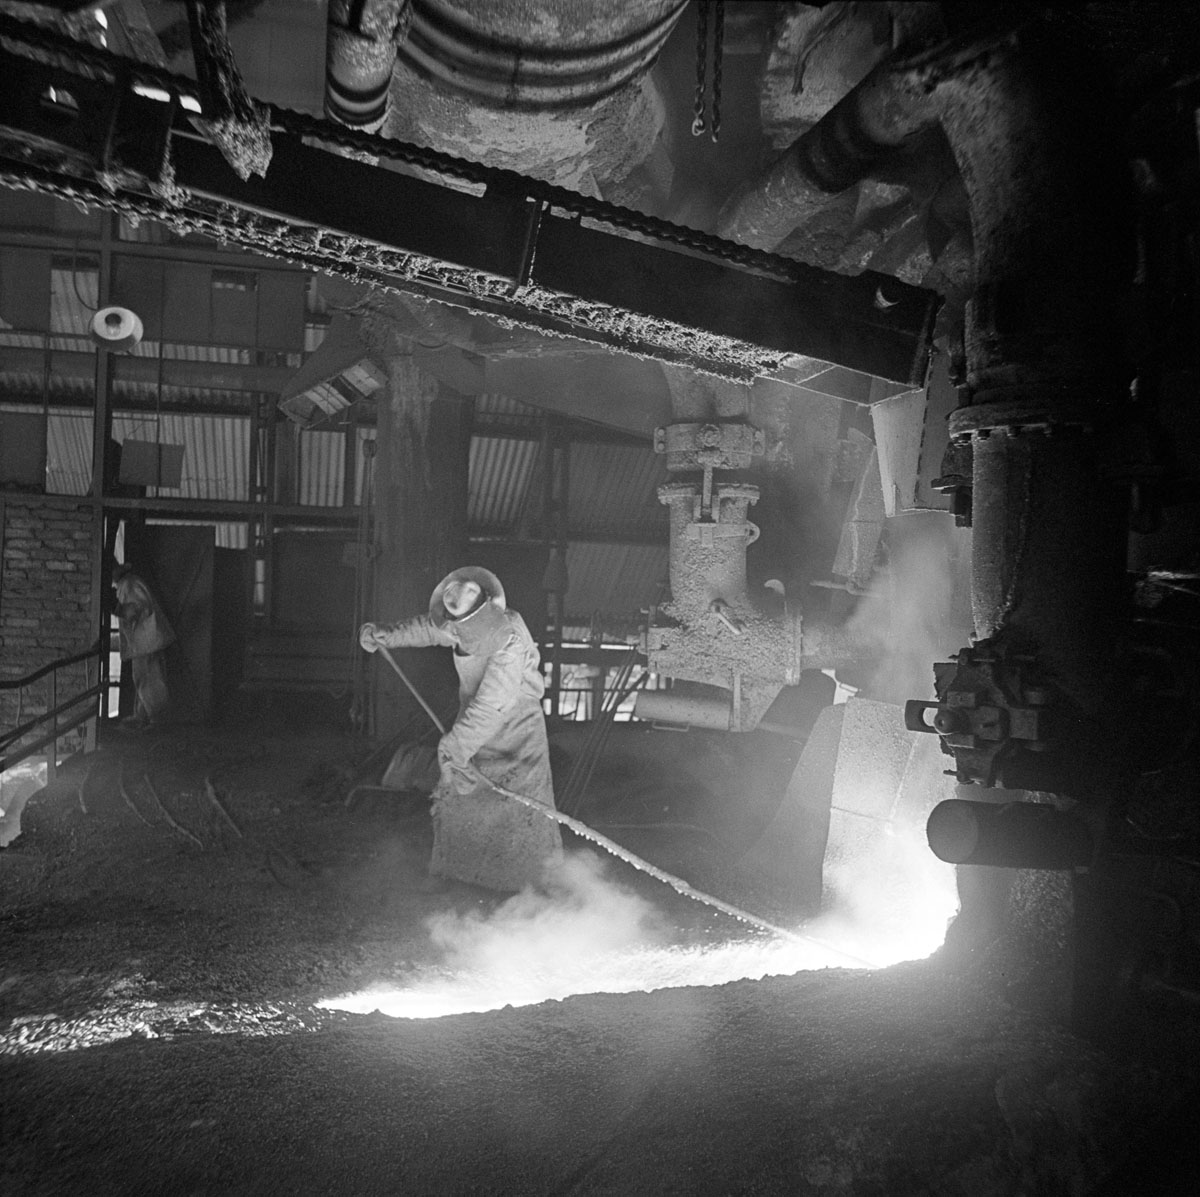 A Steelworker in Ostrowiec Świętokrzyski